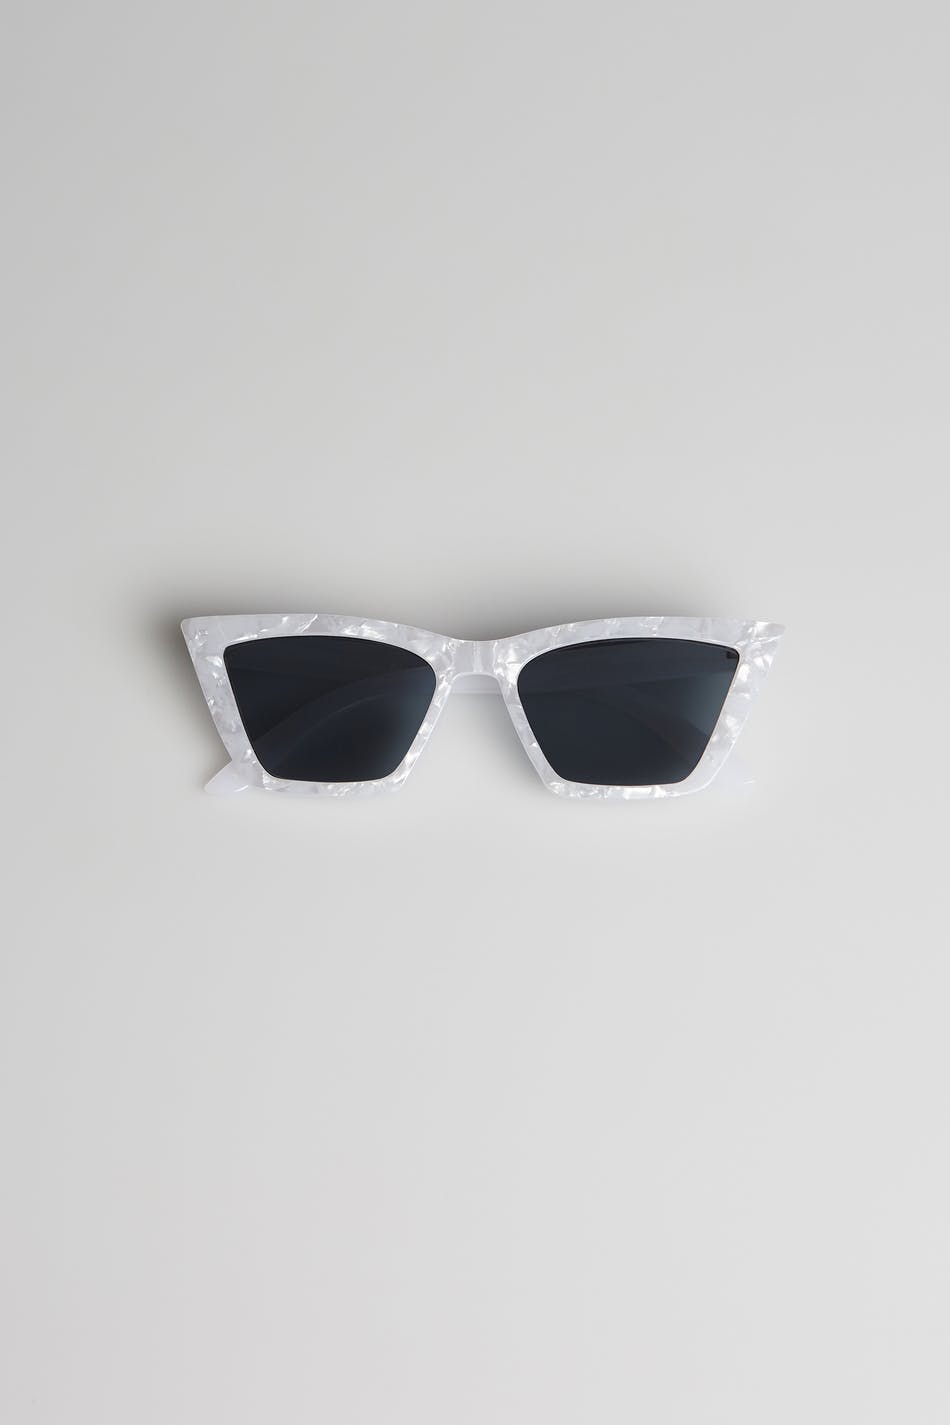 Ida sunglasses